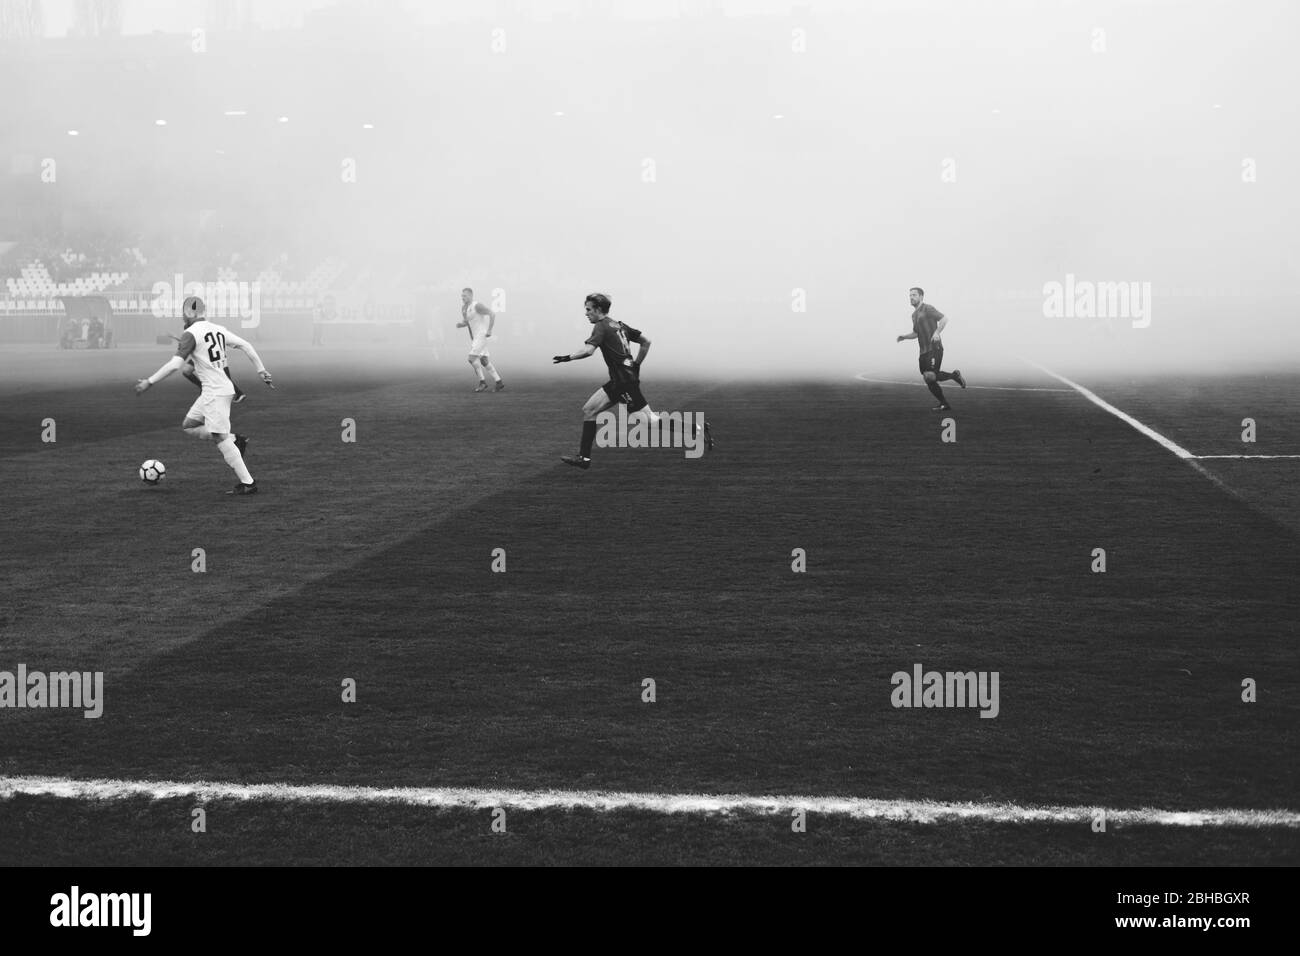 Rauch steigt über dem Spielfeld auf, nachdem Fußballfans während eines Fußballspiels Rauchfackeln entzündet haben. Novi Sad, Serbien Stockfoto